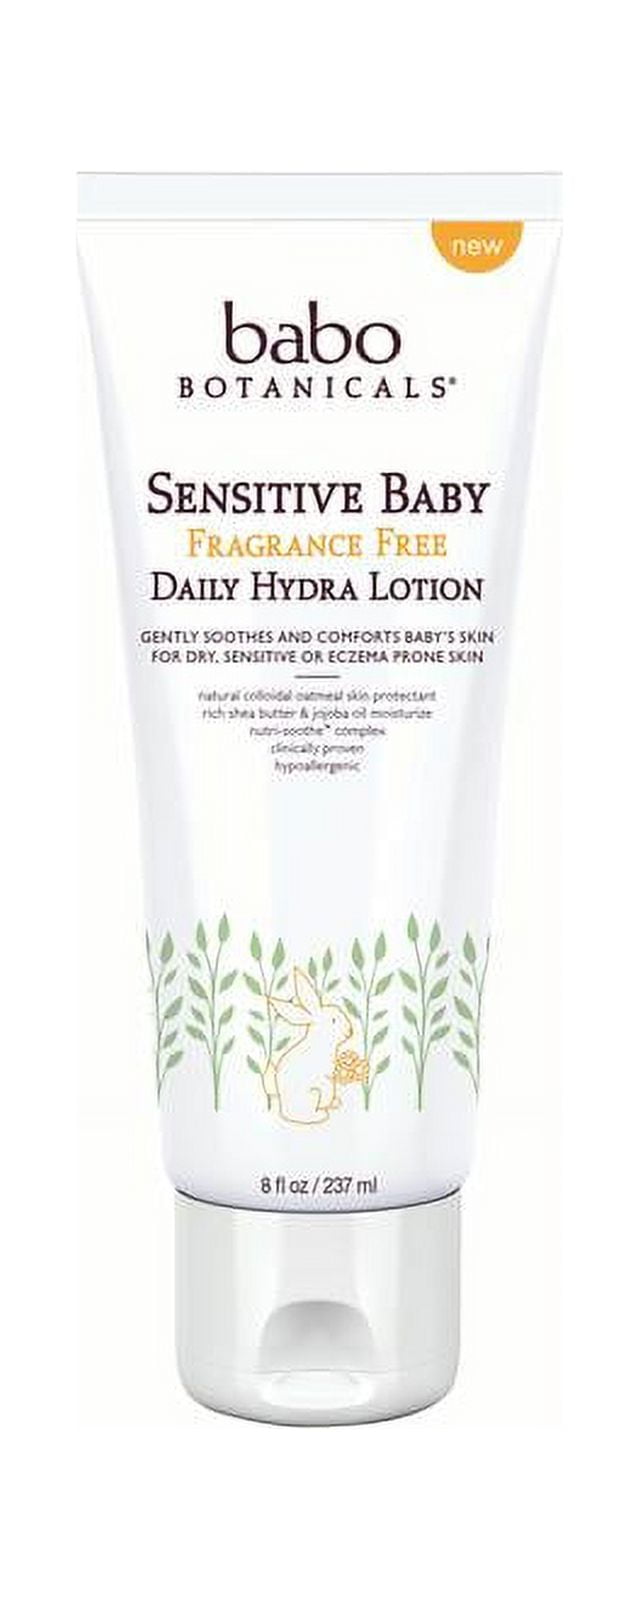 Babobotani Sensitive Baby Daily Hydra Lotion Fragrance Free 8 oz Bottle